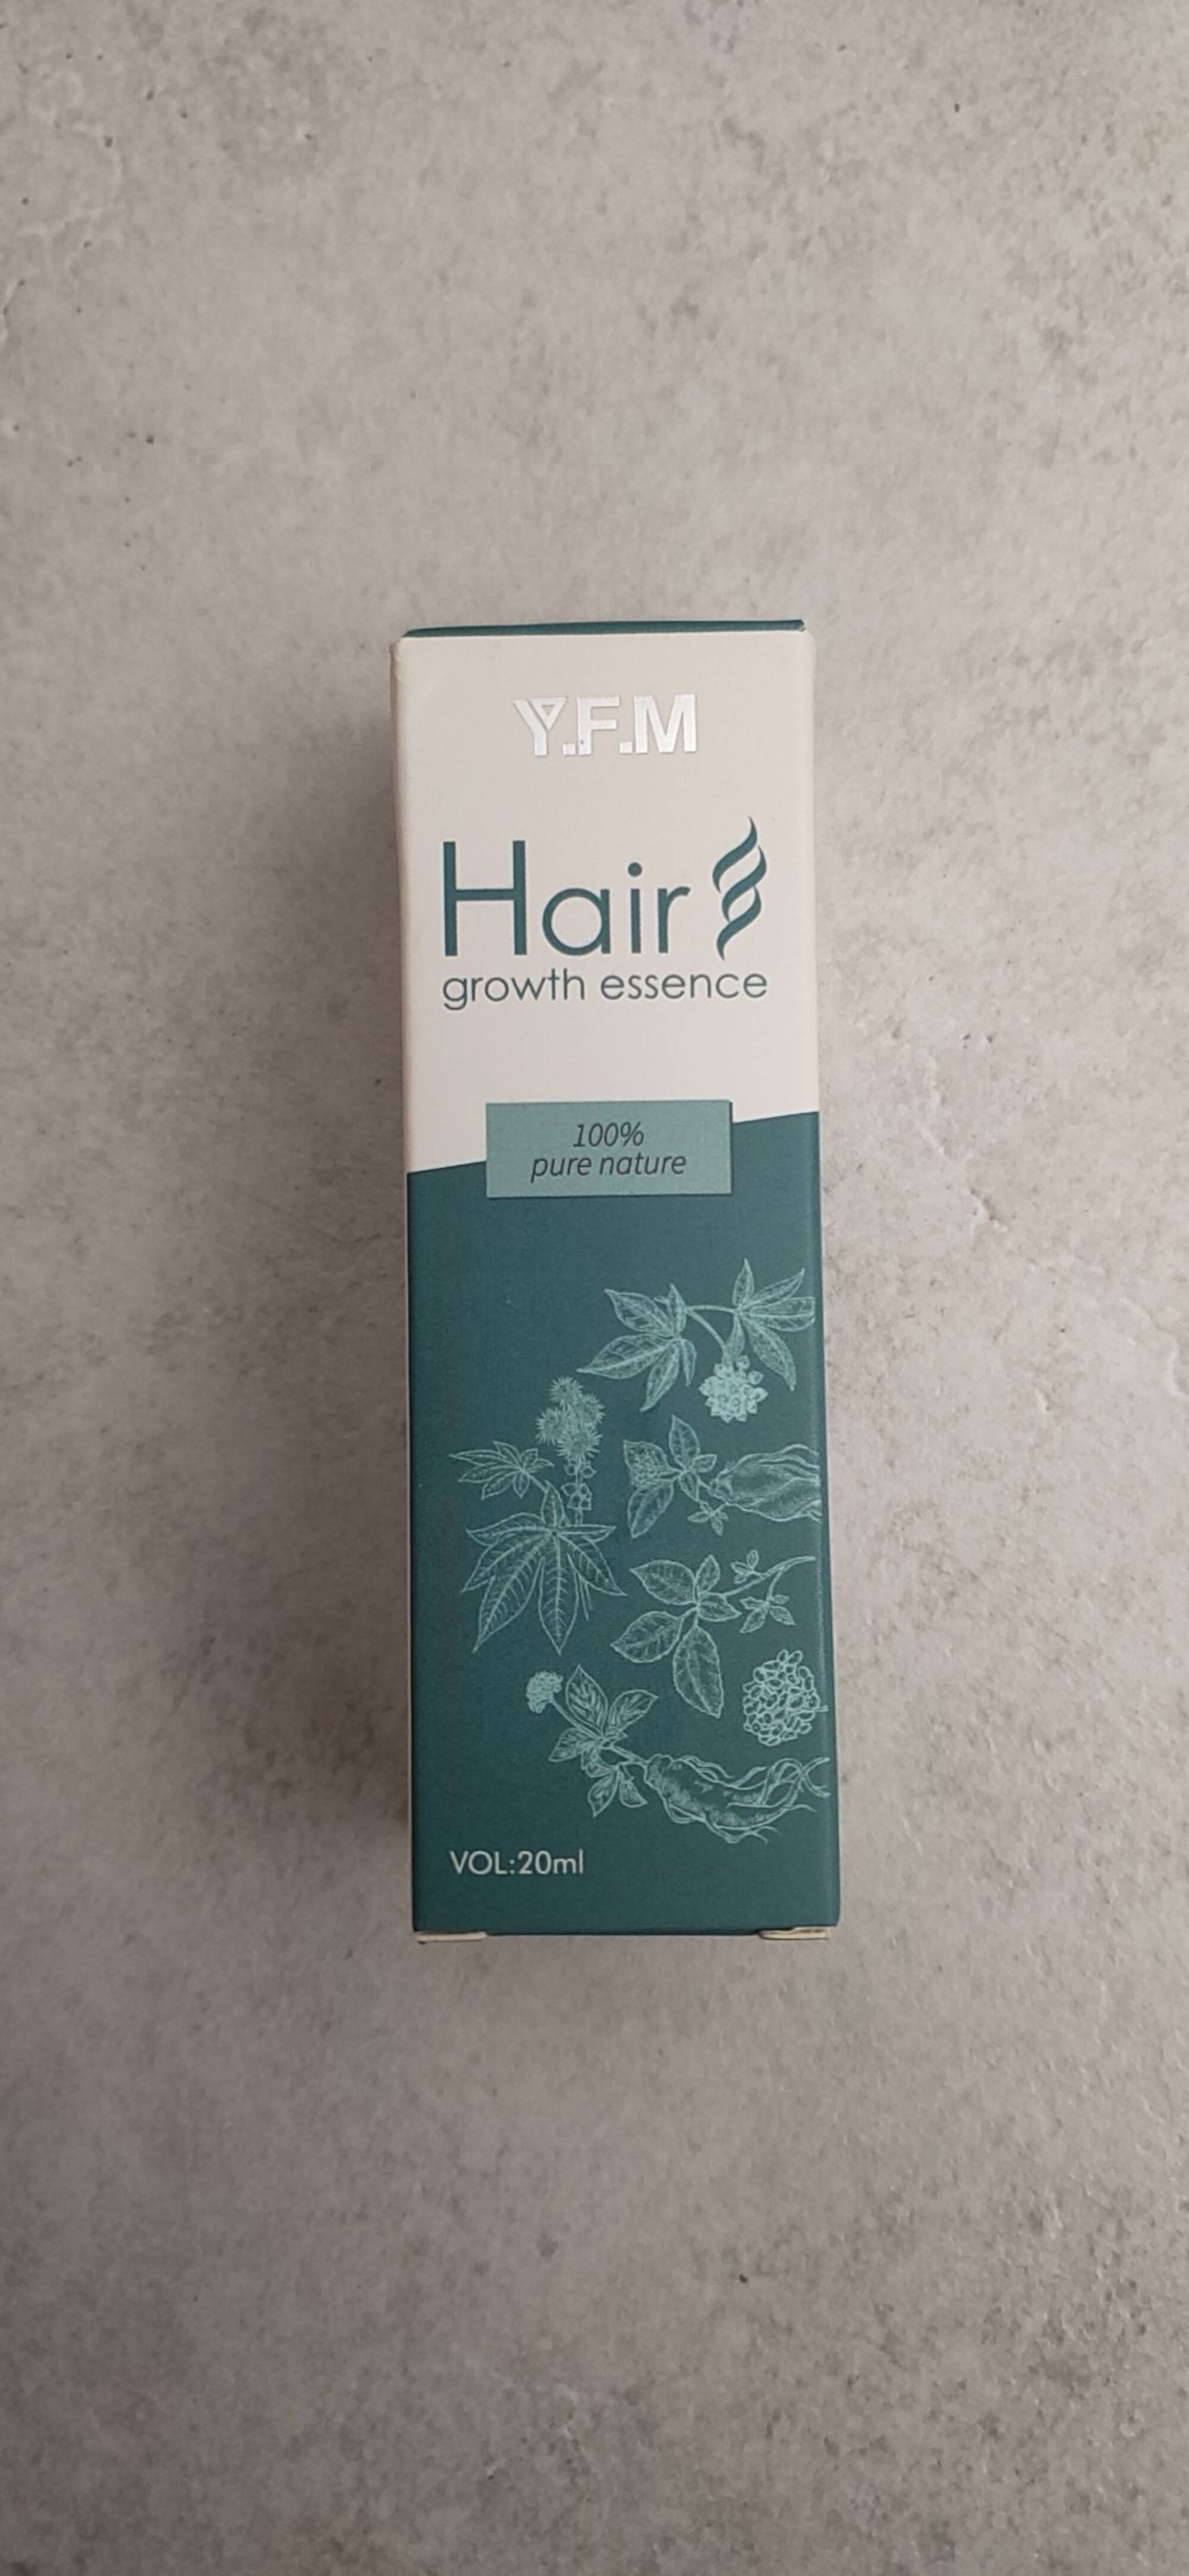 Y.F.M - Hair growth essence